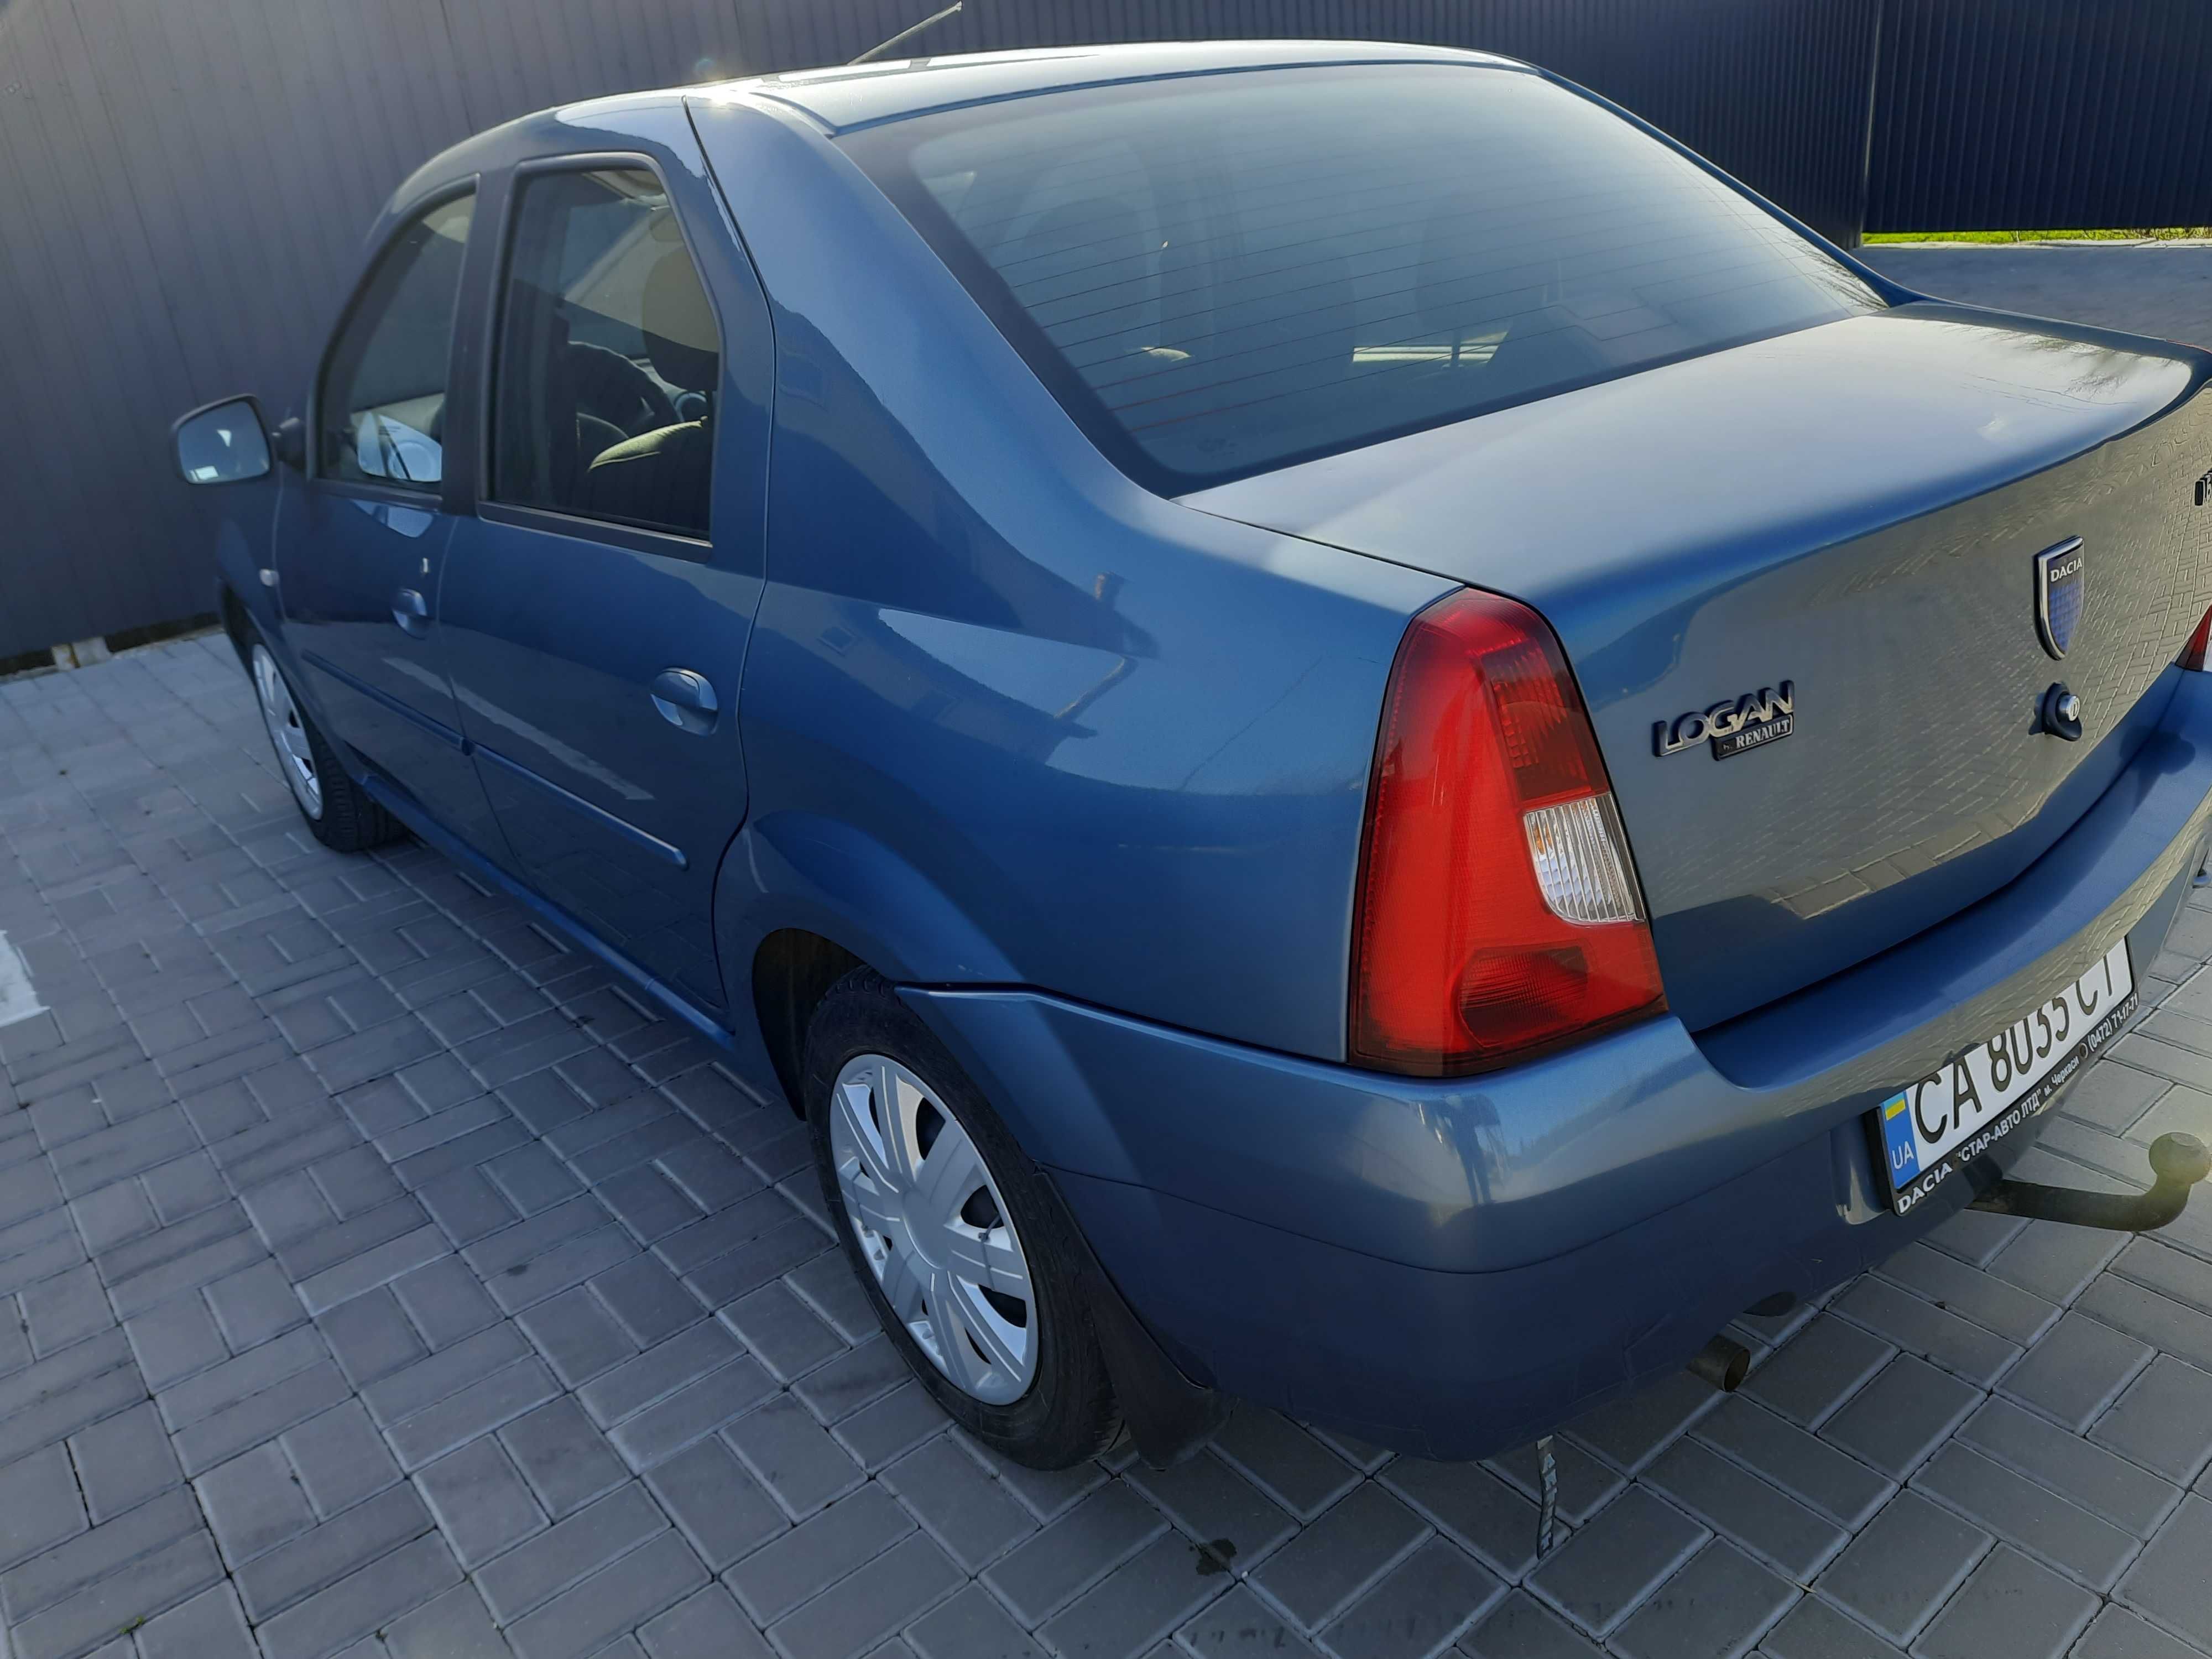 Dacia Logan 2007